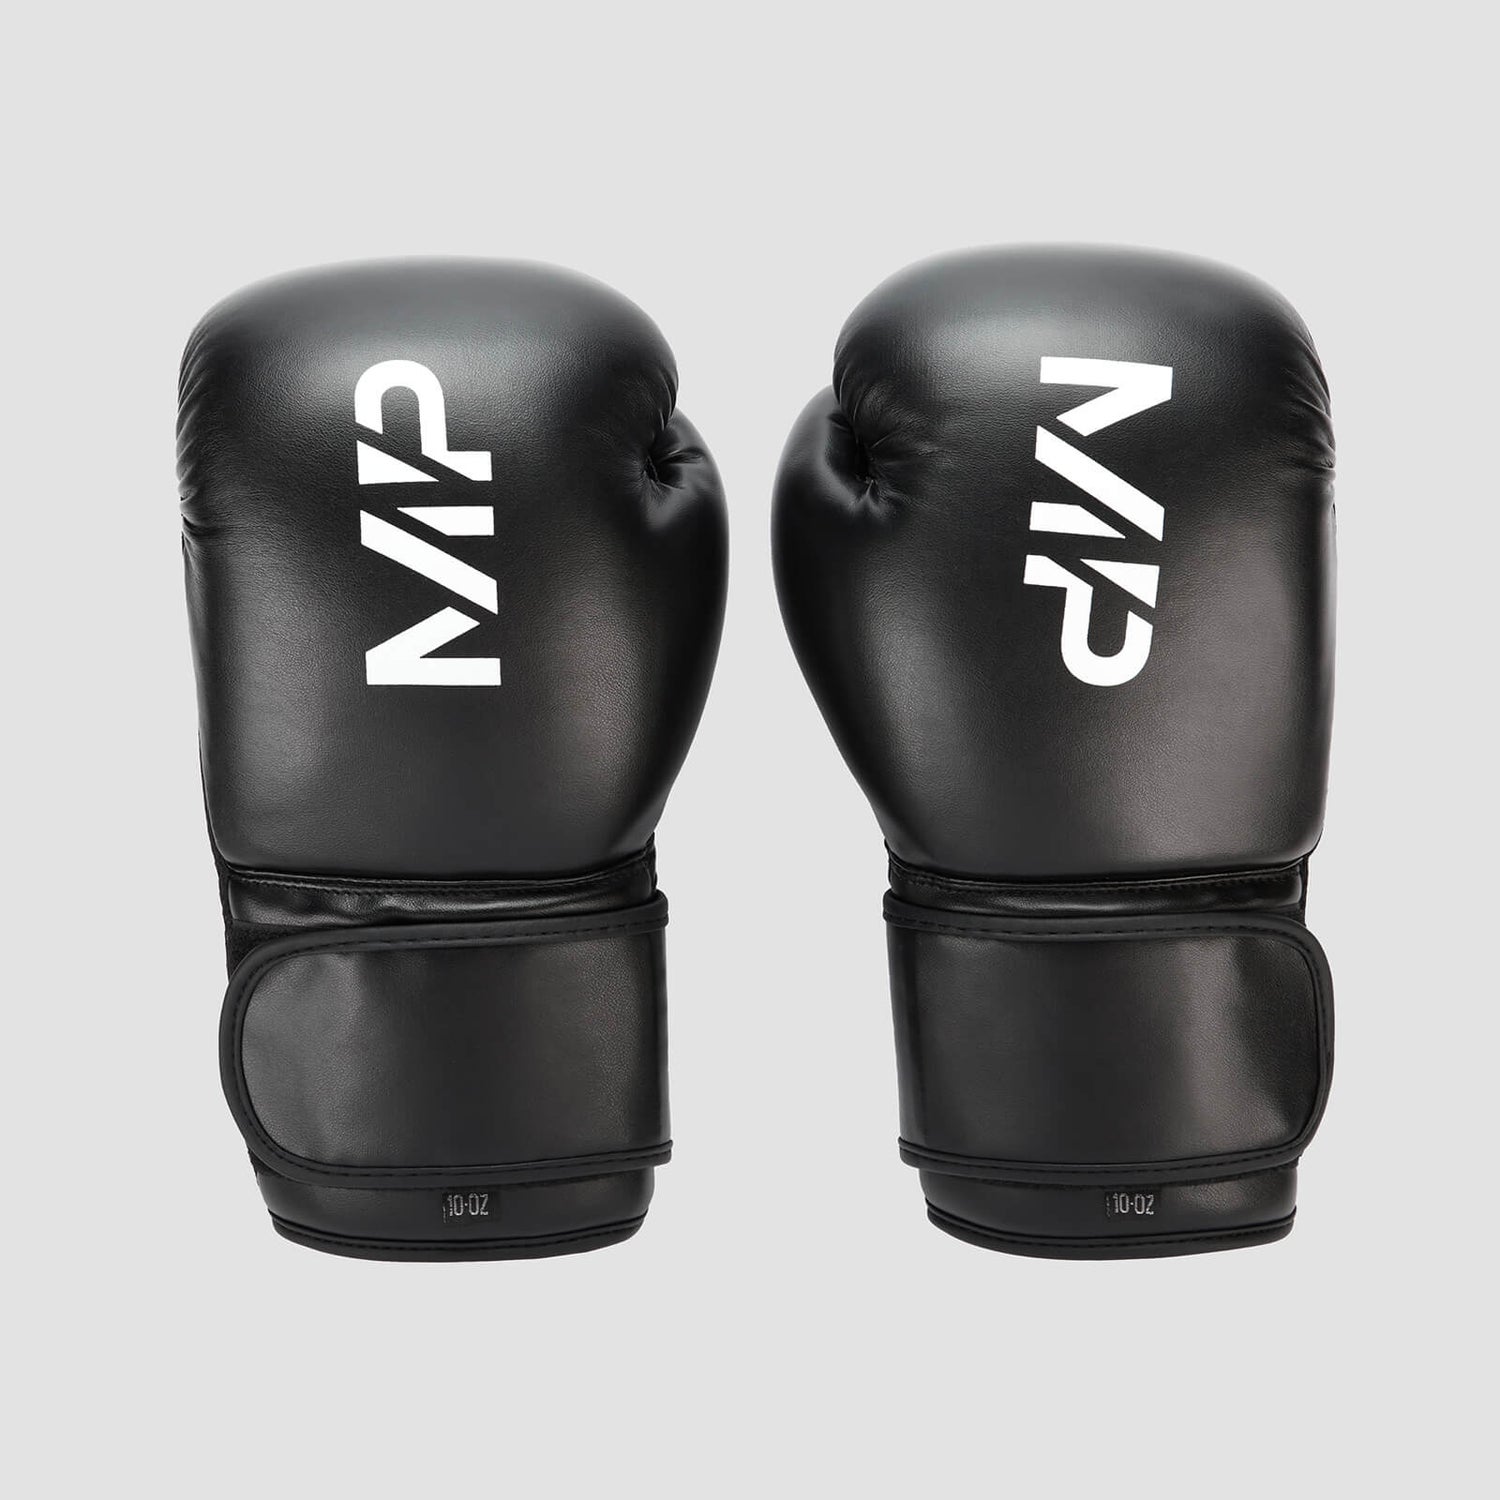 MP ボクシング グローブ - ブラック - 12oz